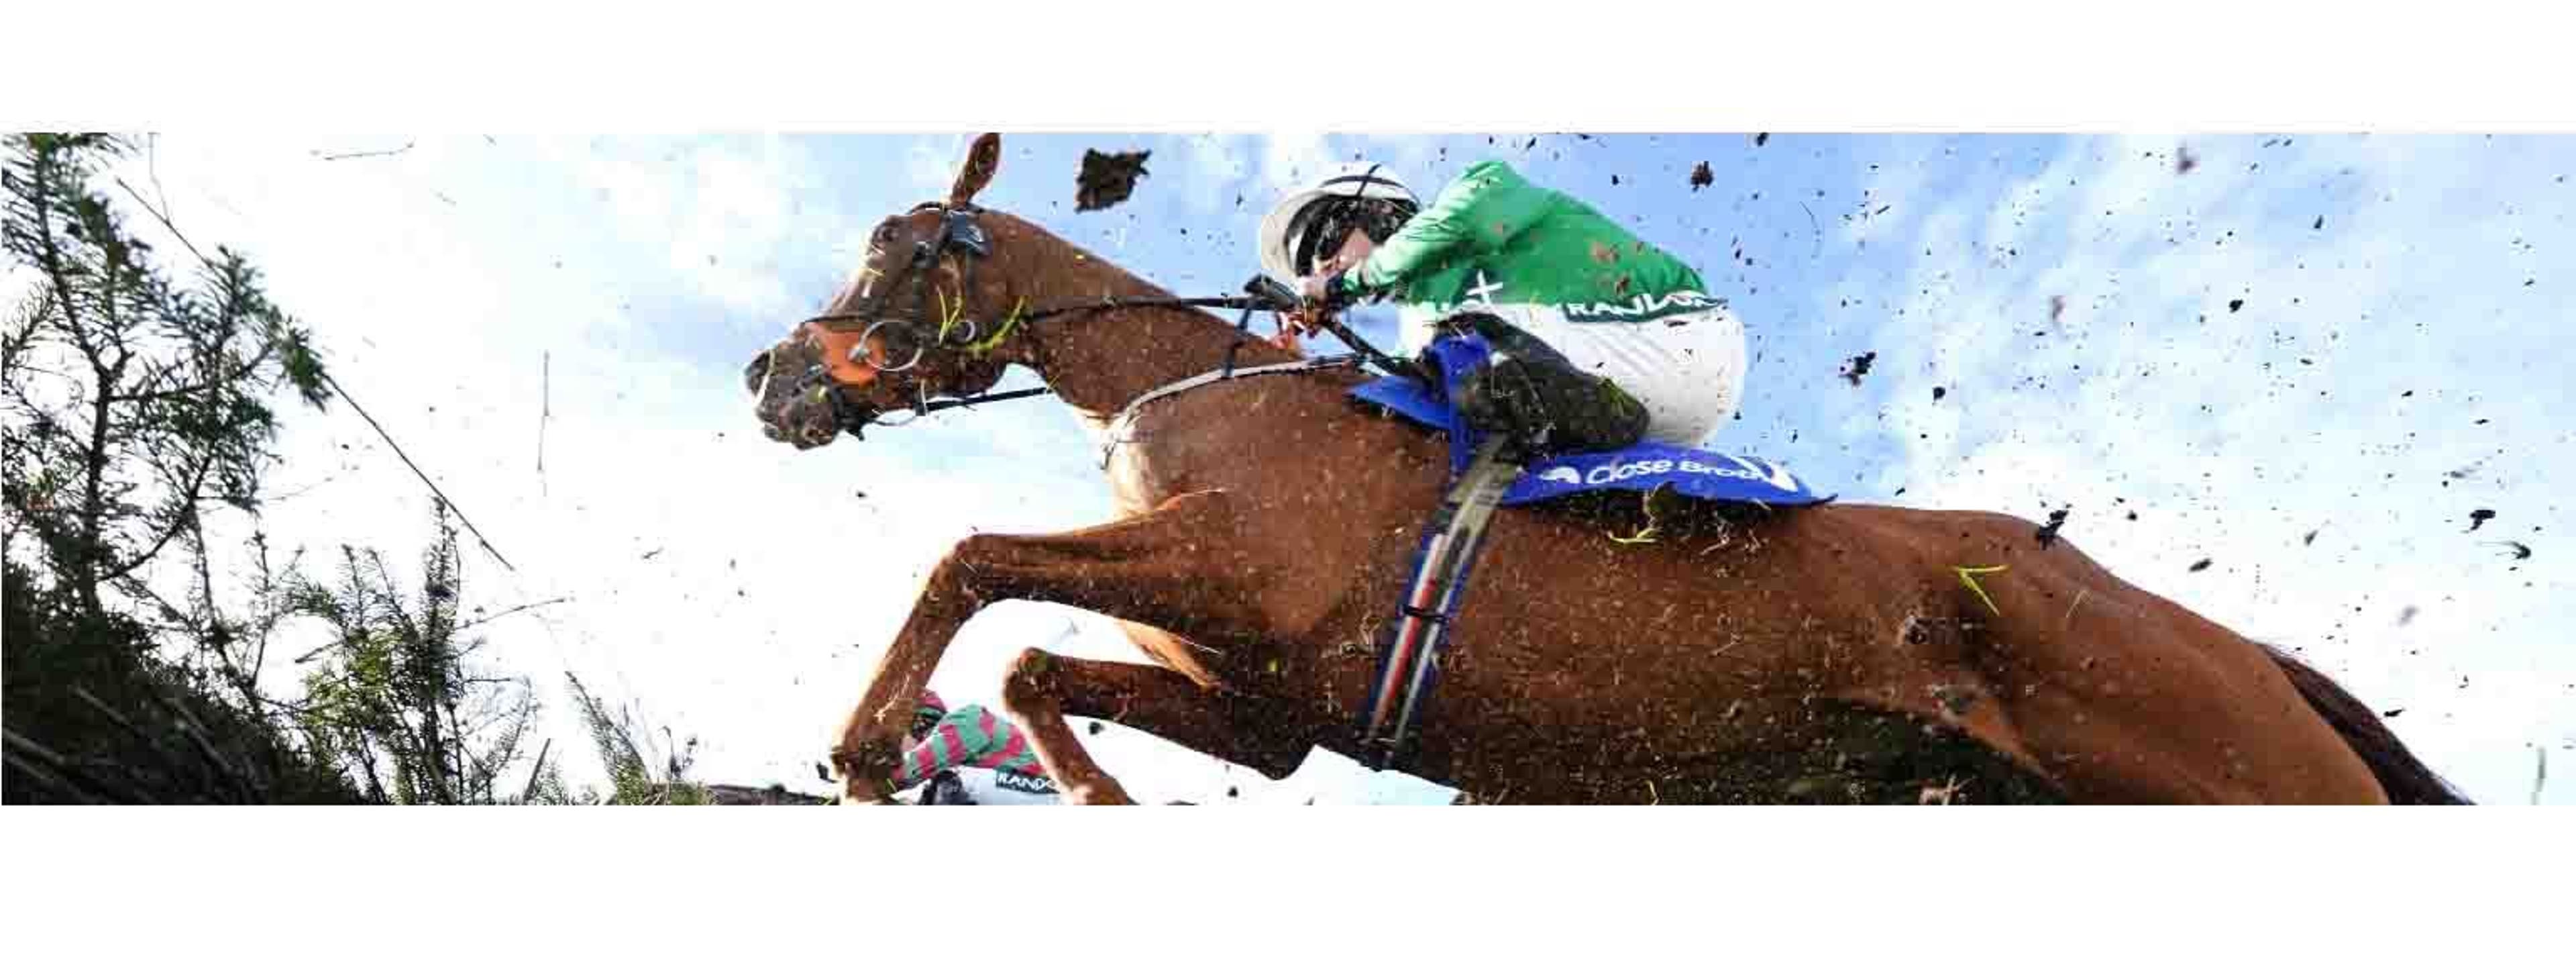  jockeyclub horseracing racing 